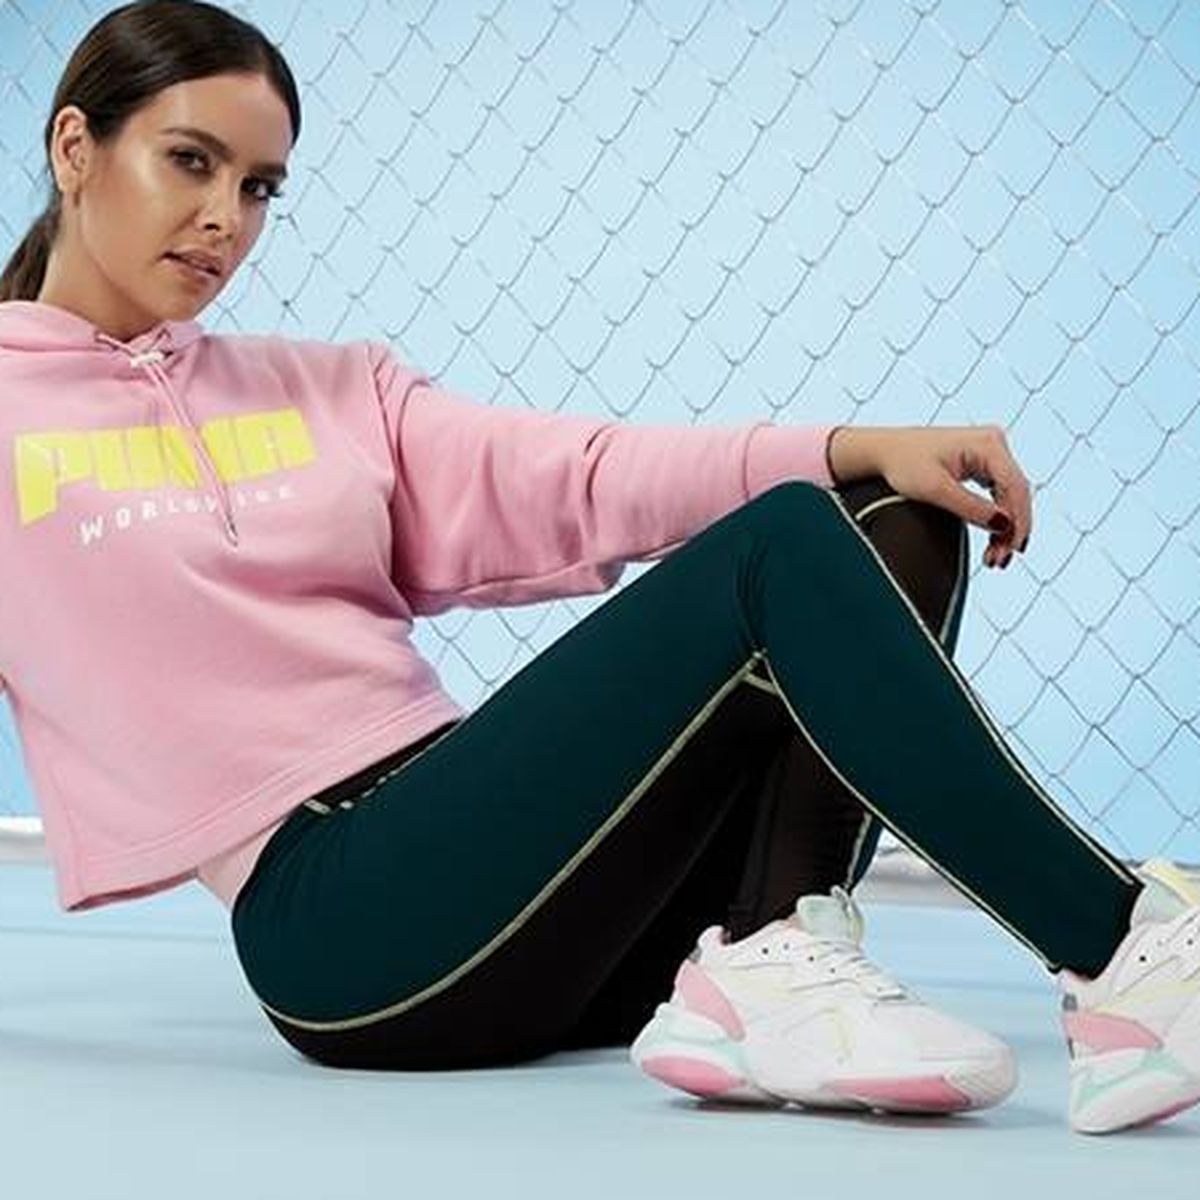 Adidas y tiemblan ante el triunfo de Puma entre celebs y en el deporte